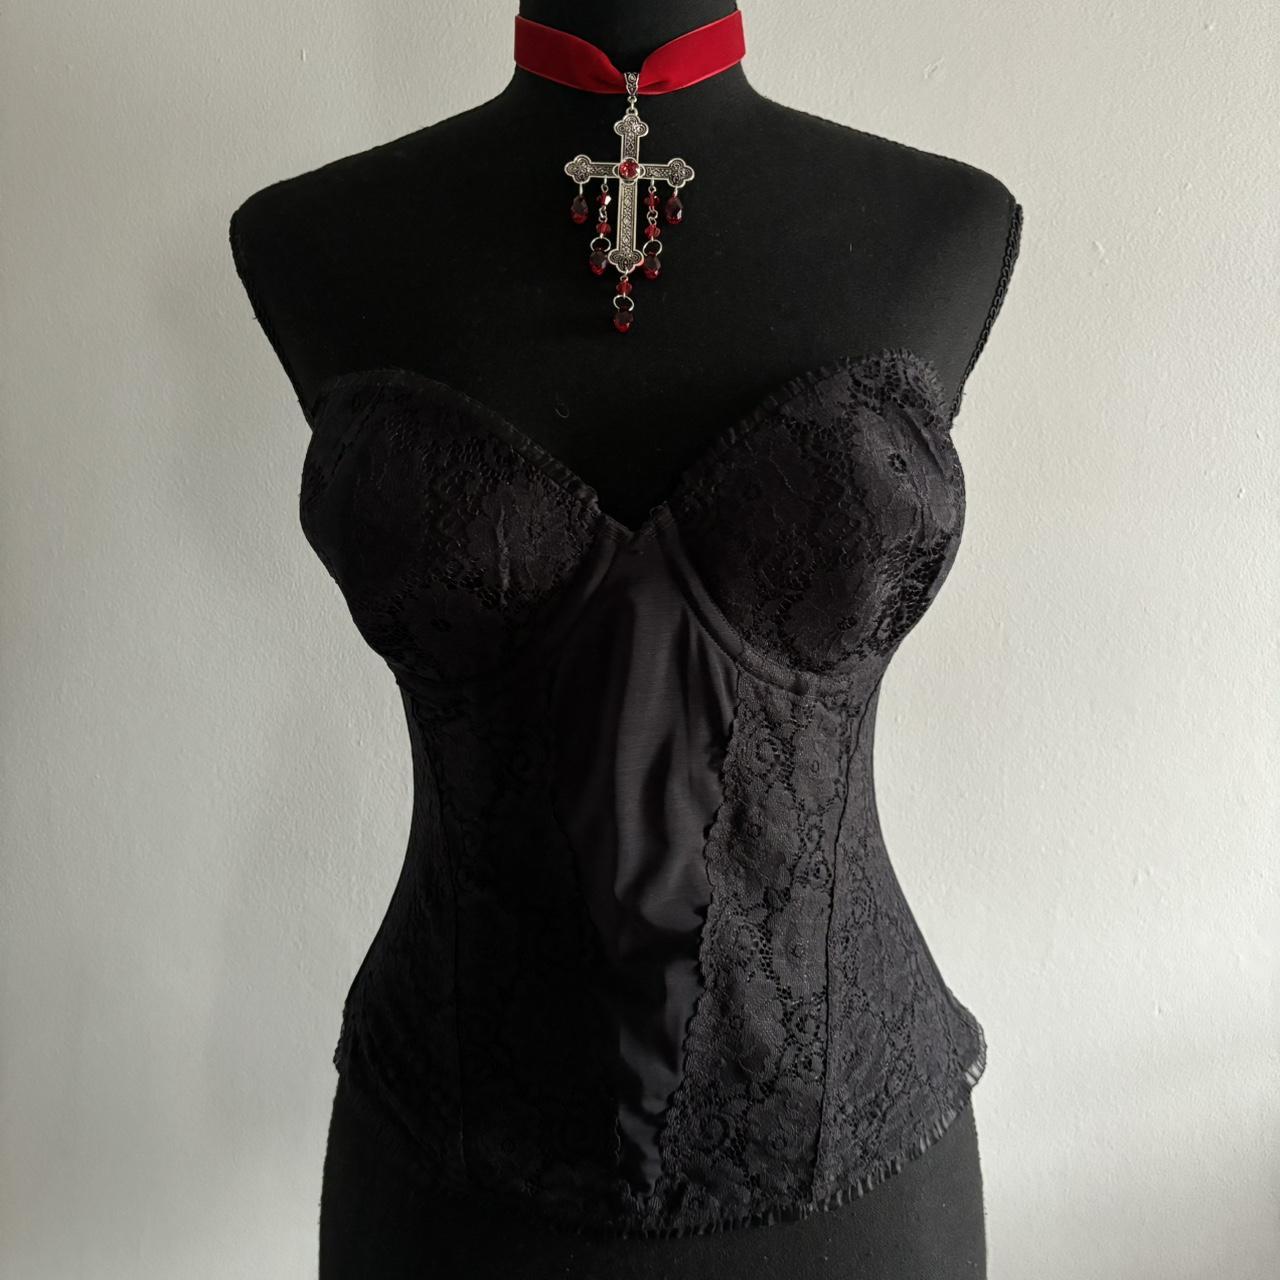 Skims cotton corset top size XXS white/marble. - Depop